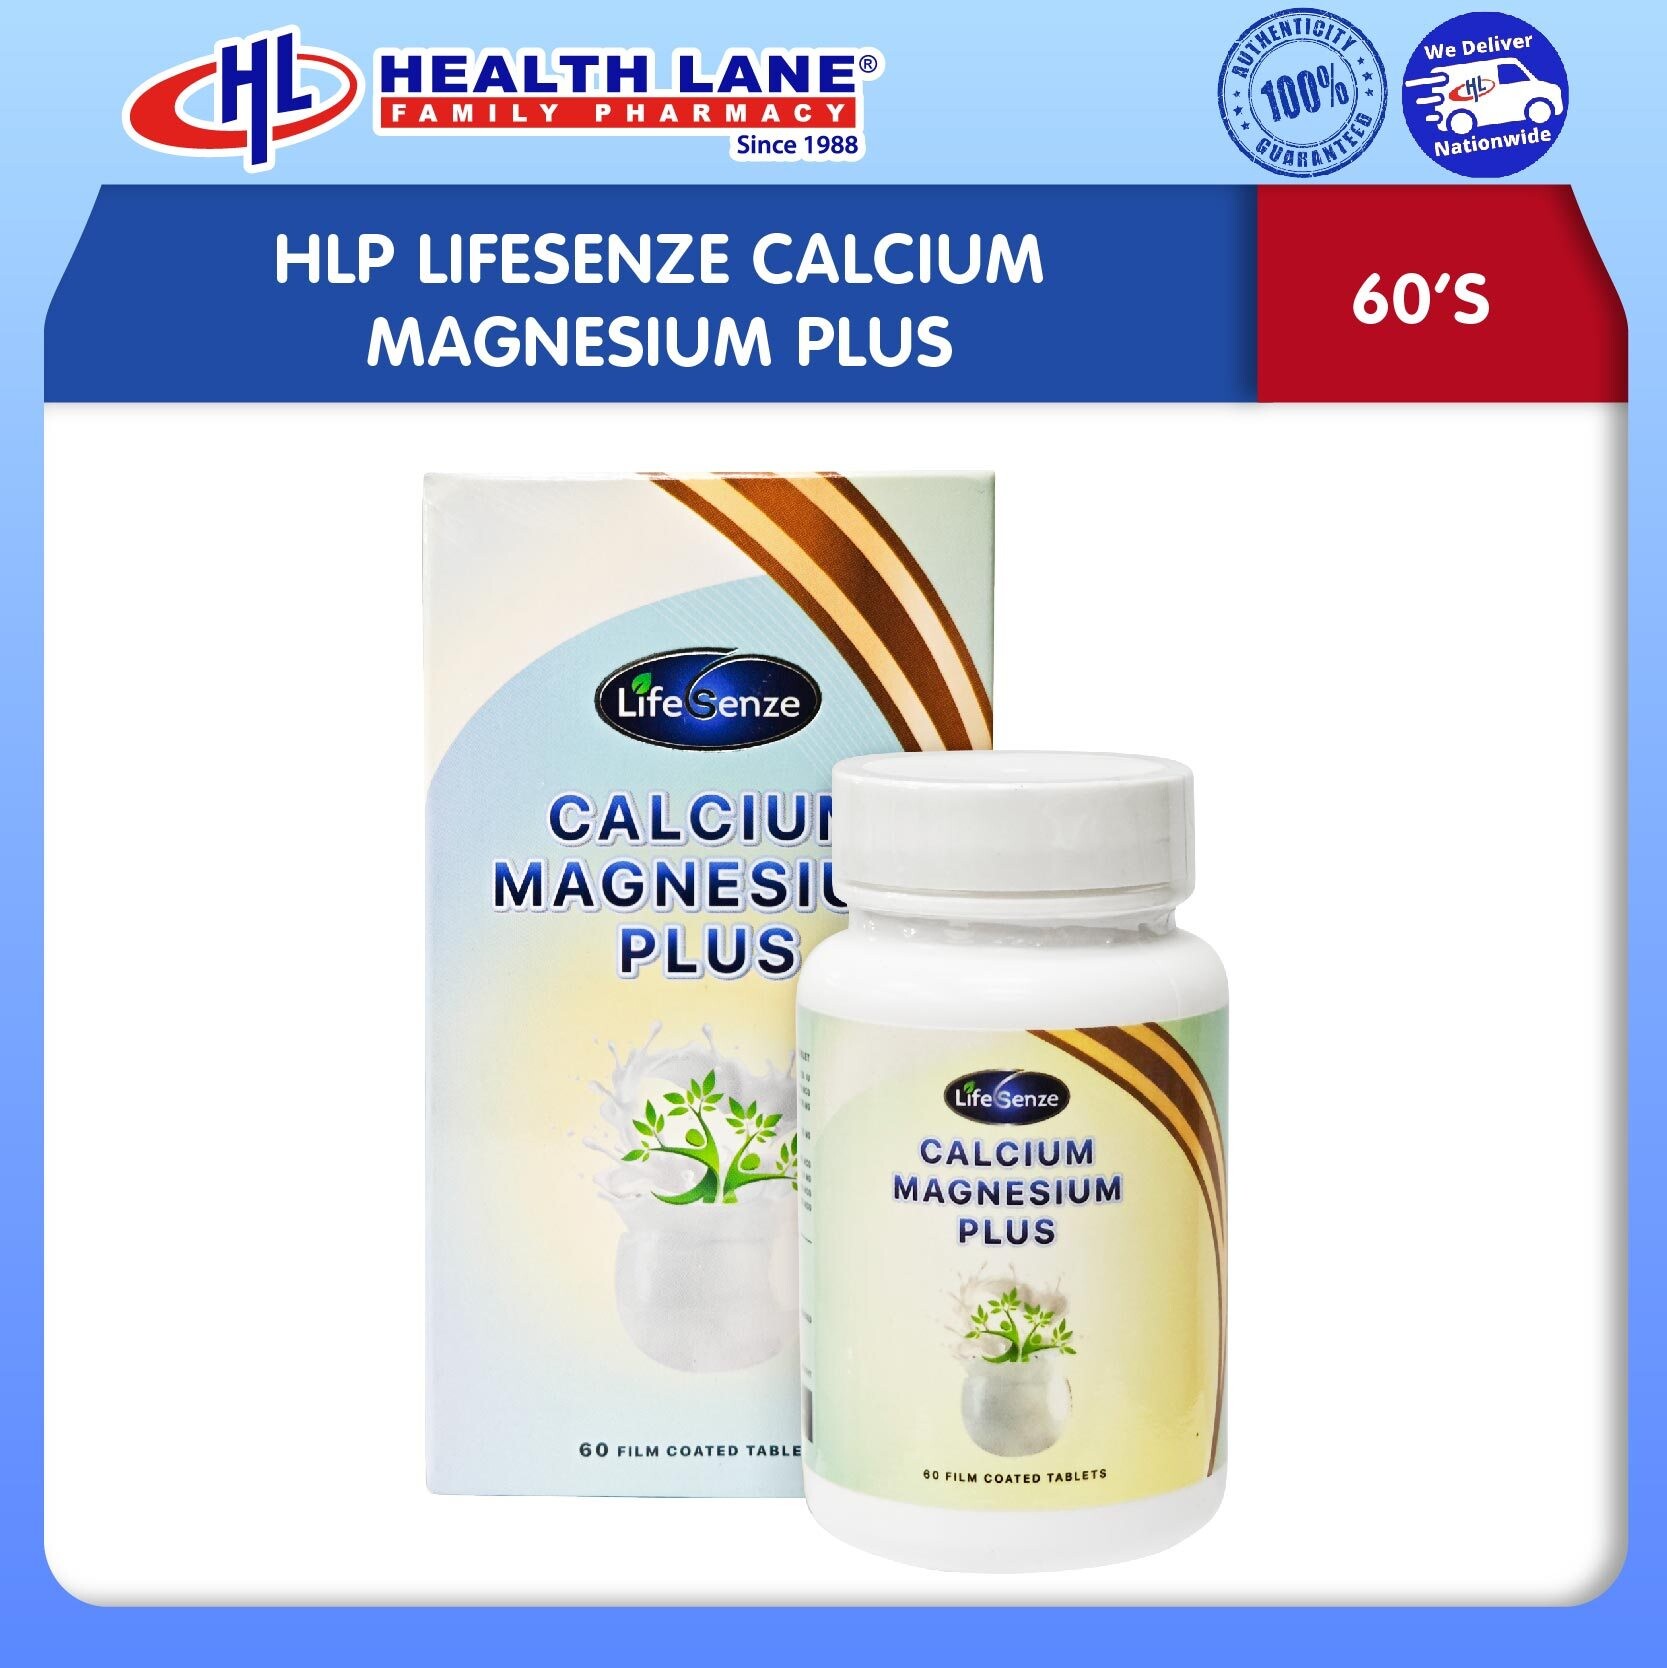 HLP LIFESENZE CALCIUM MAGNESIUM PLUS (60'S)